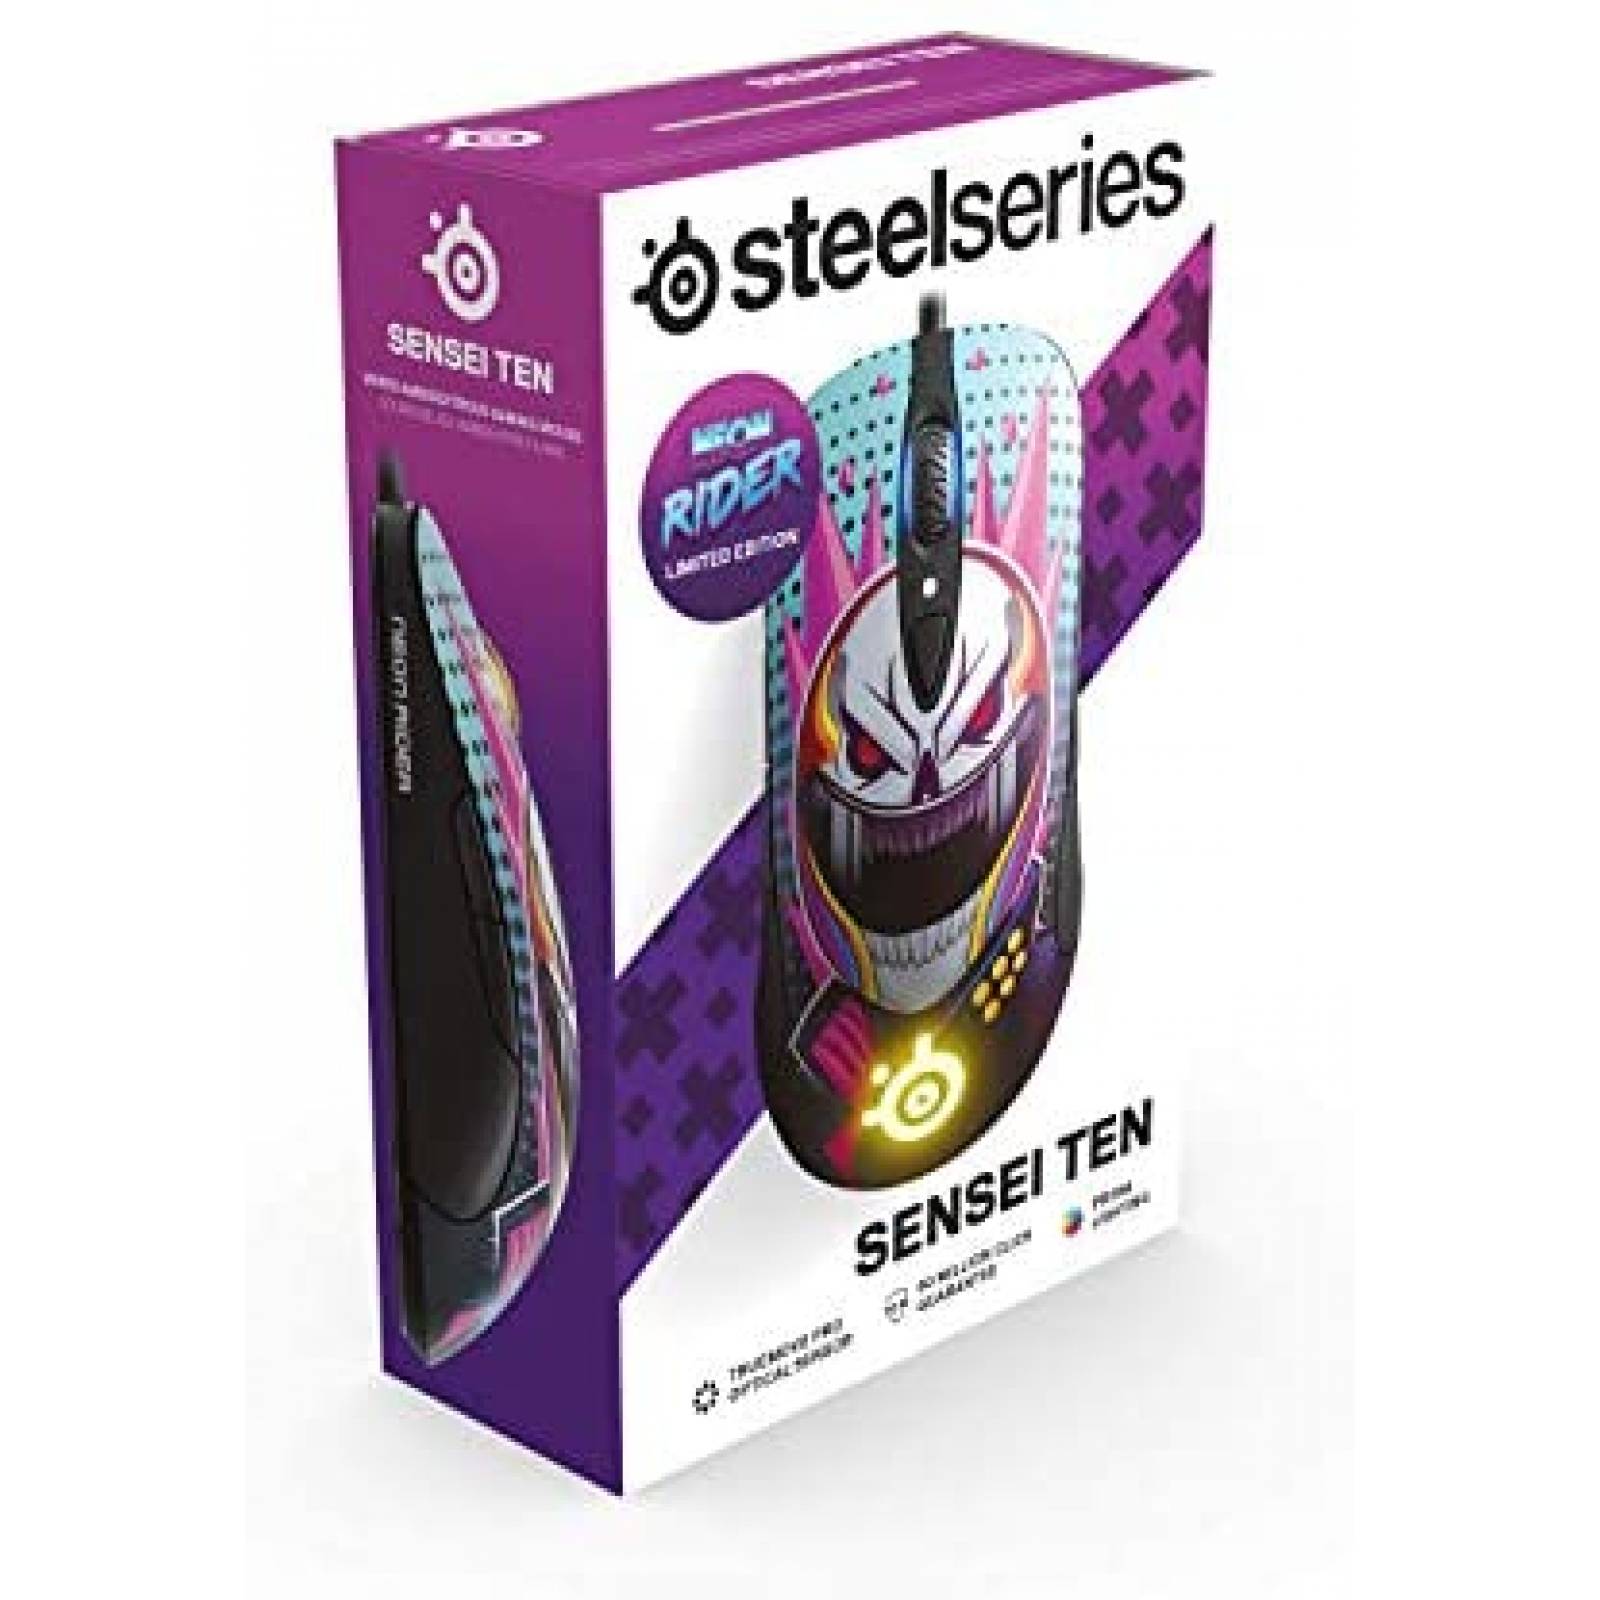 Ratón de Computadora SteelSeries Gamer con Sensores